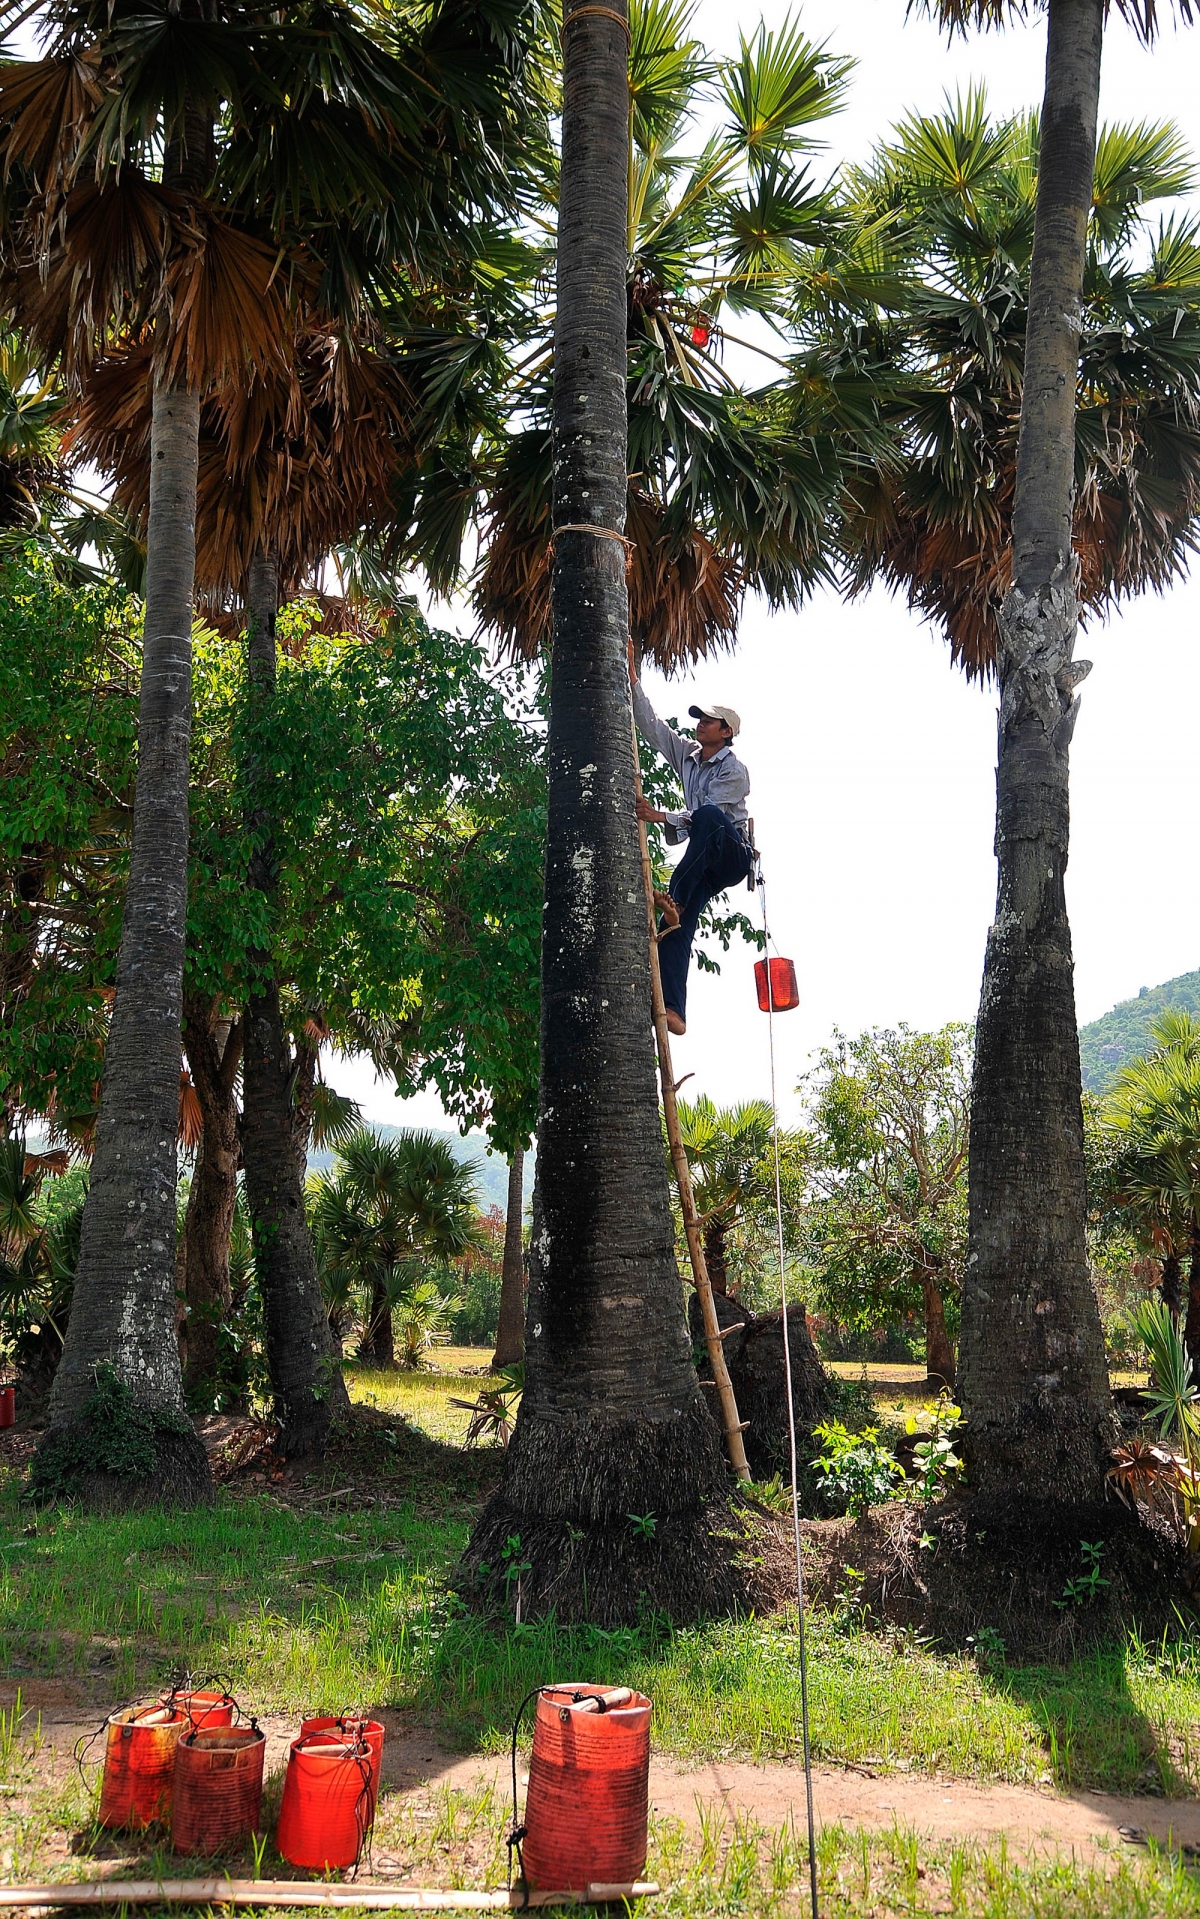 Người dân trèo lên cây thốt nốt từ chiếc thang làm từ thân cây tre, lấy nước về nấu đường. Ảnh: An Hiếu - Báo ảnh Dân tộc và Miền núi